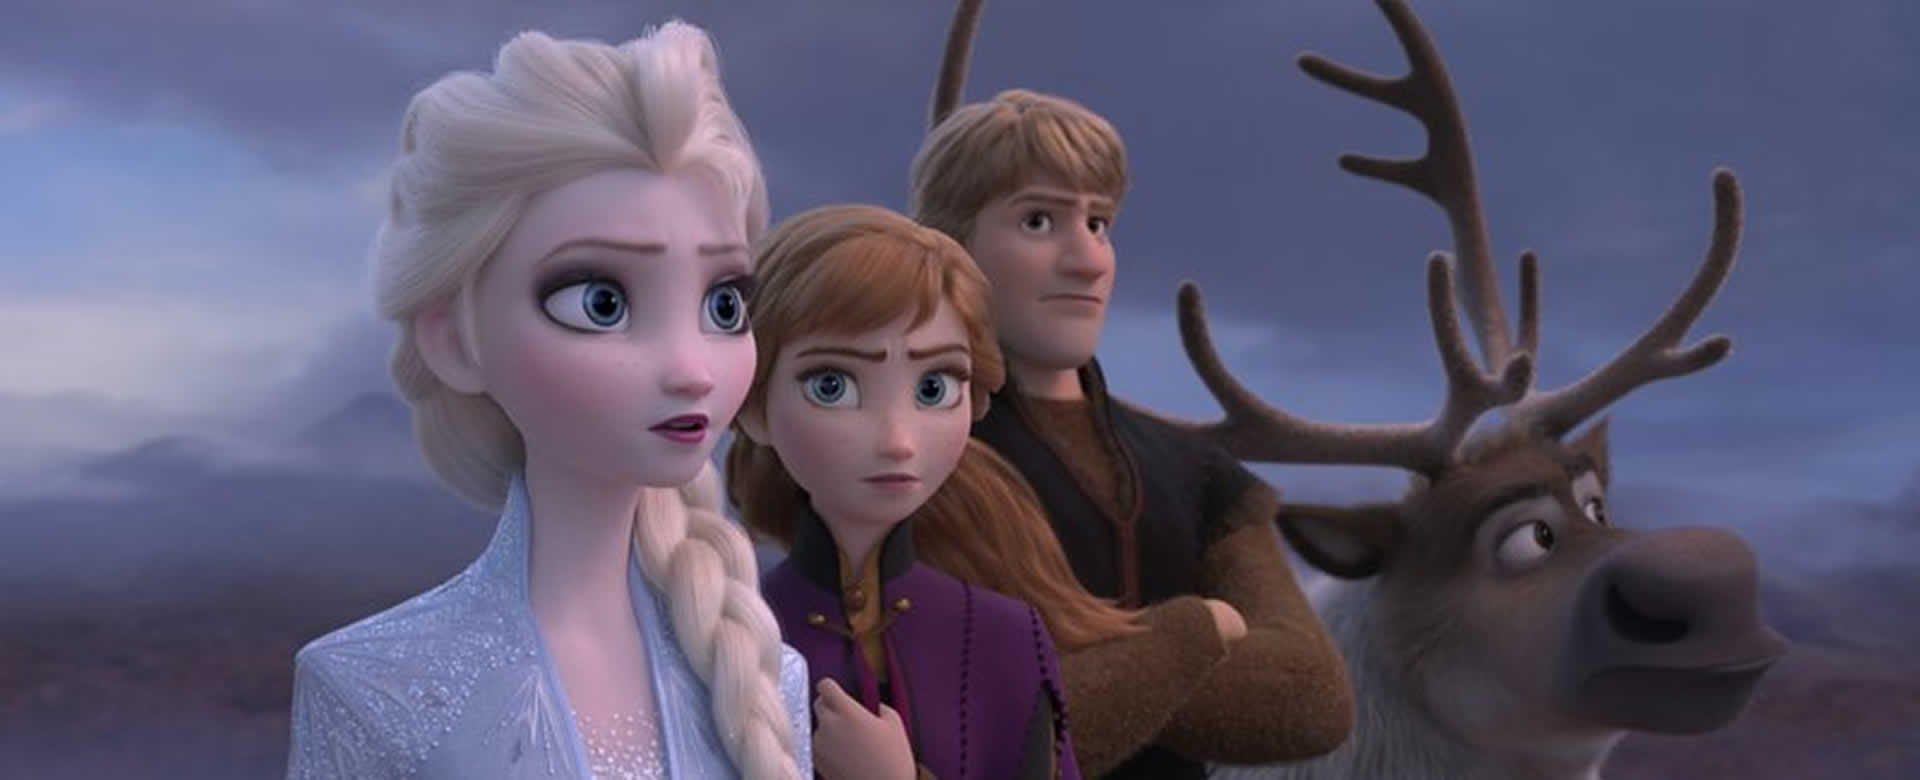 Frozen 2 ha recaudado 163,8 millones de dólares a nivel mundial